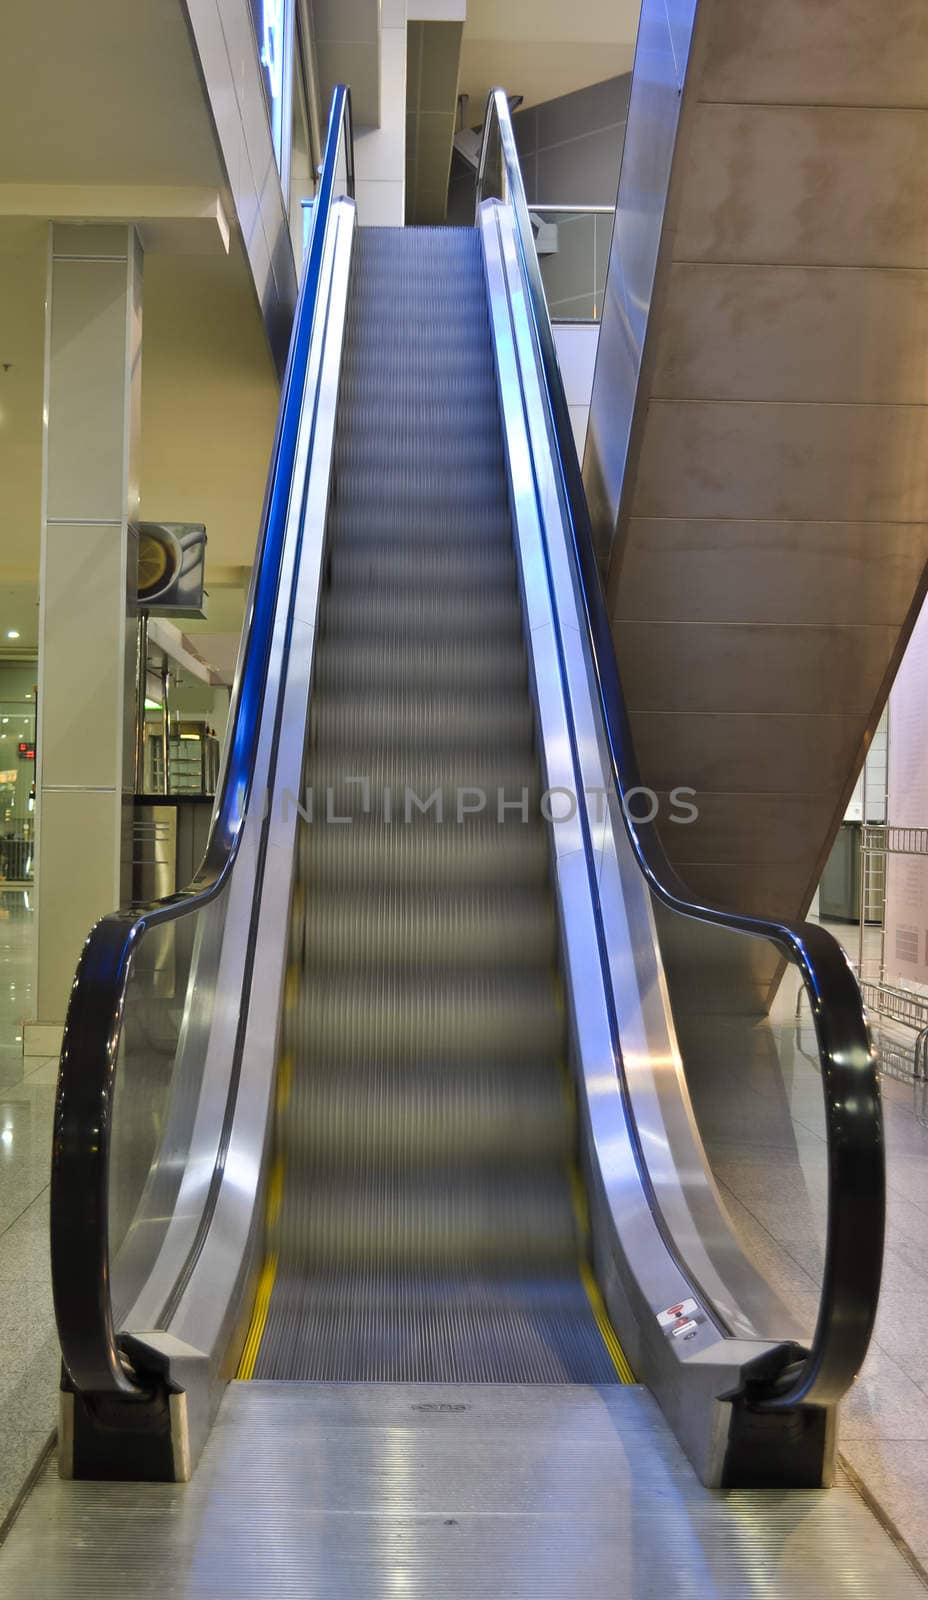 The escalator in movement